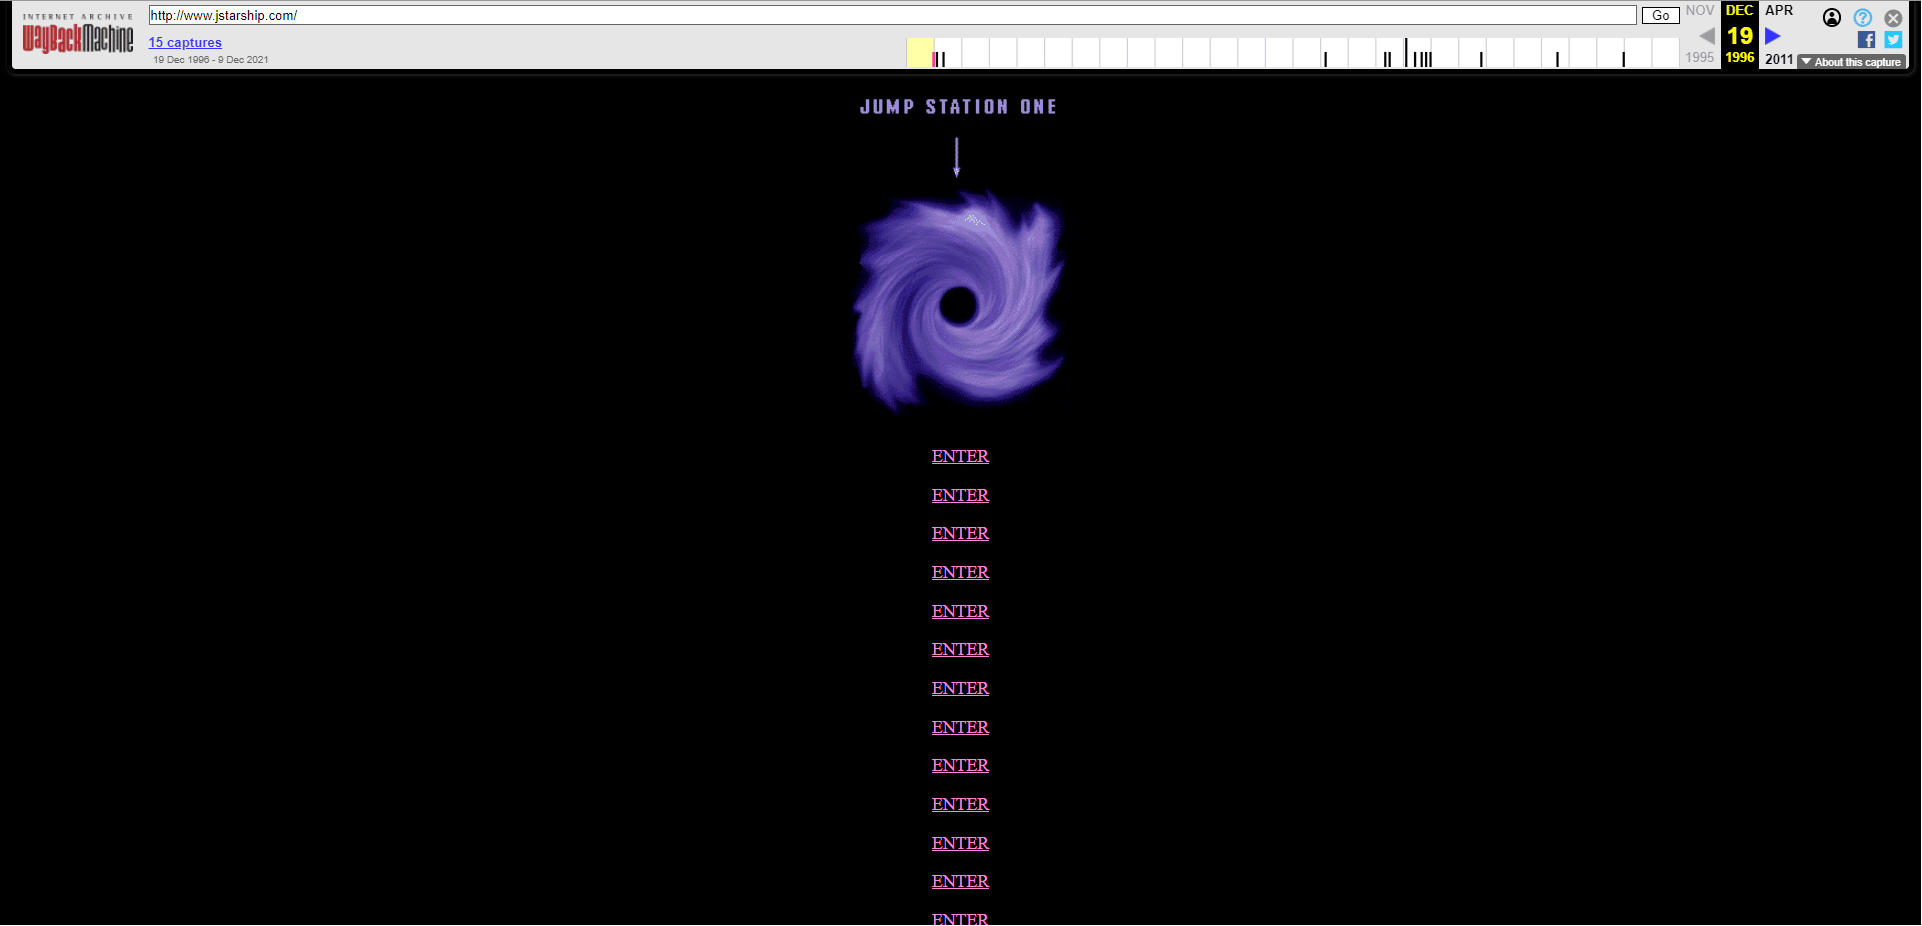 jefferson starship website in 1996